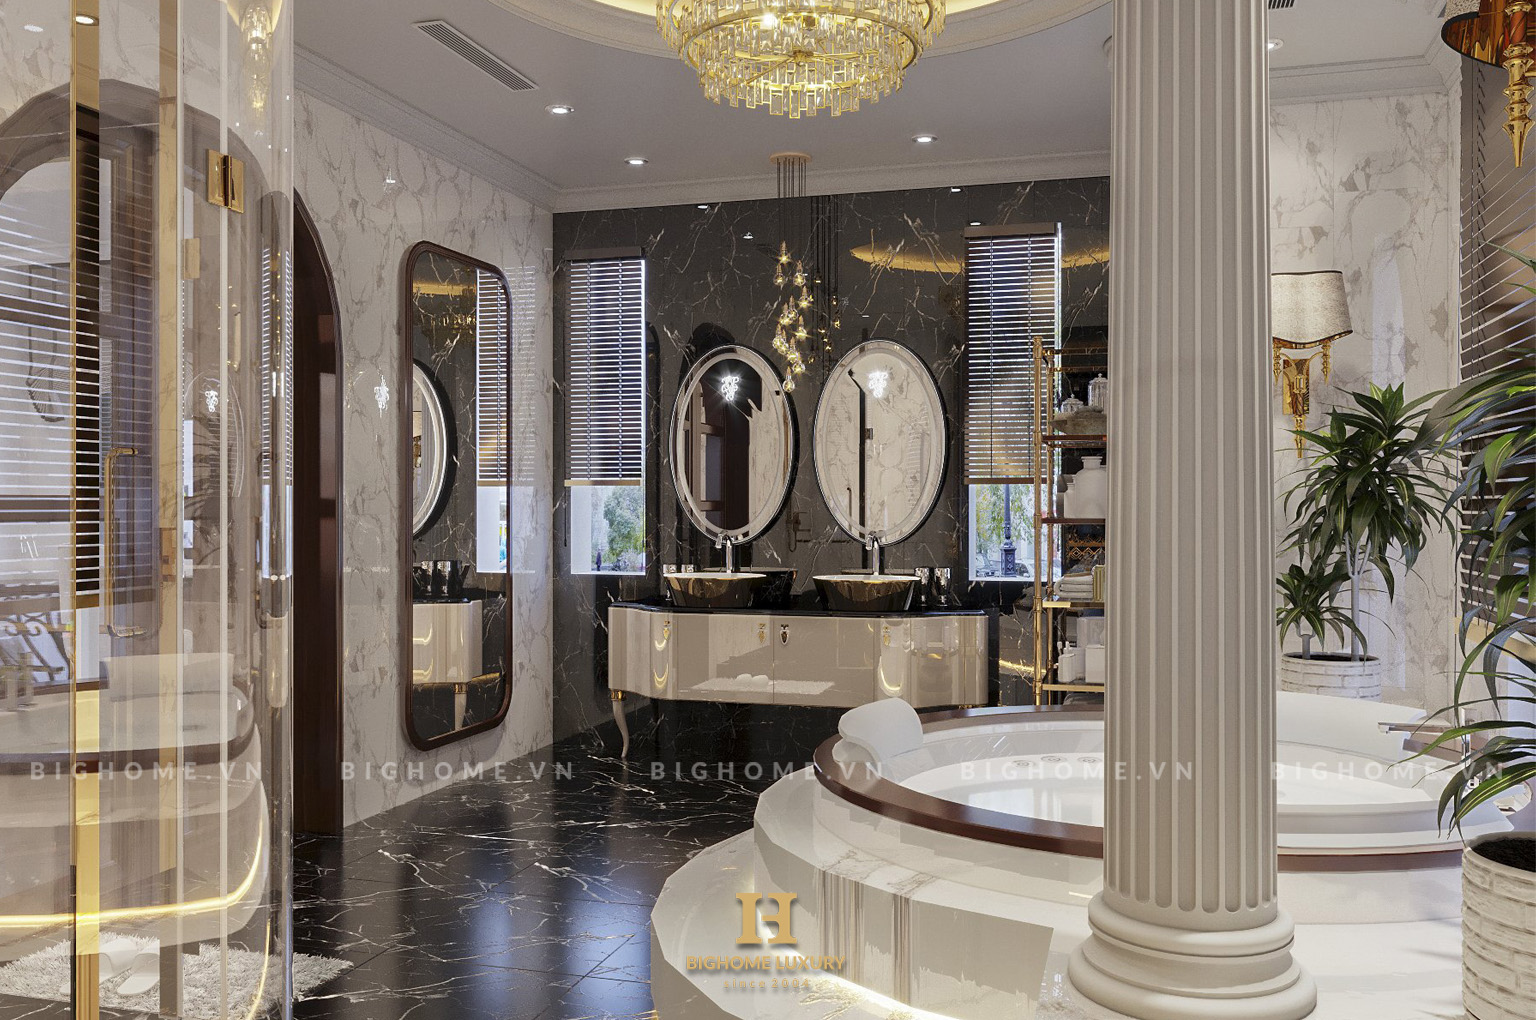 Thiết kế nội thất phòng tắm đẳng cấp và tiện nghi bậc nhất với chất liệu đá tự nhiên cao cấp